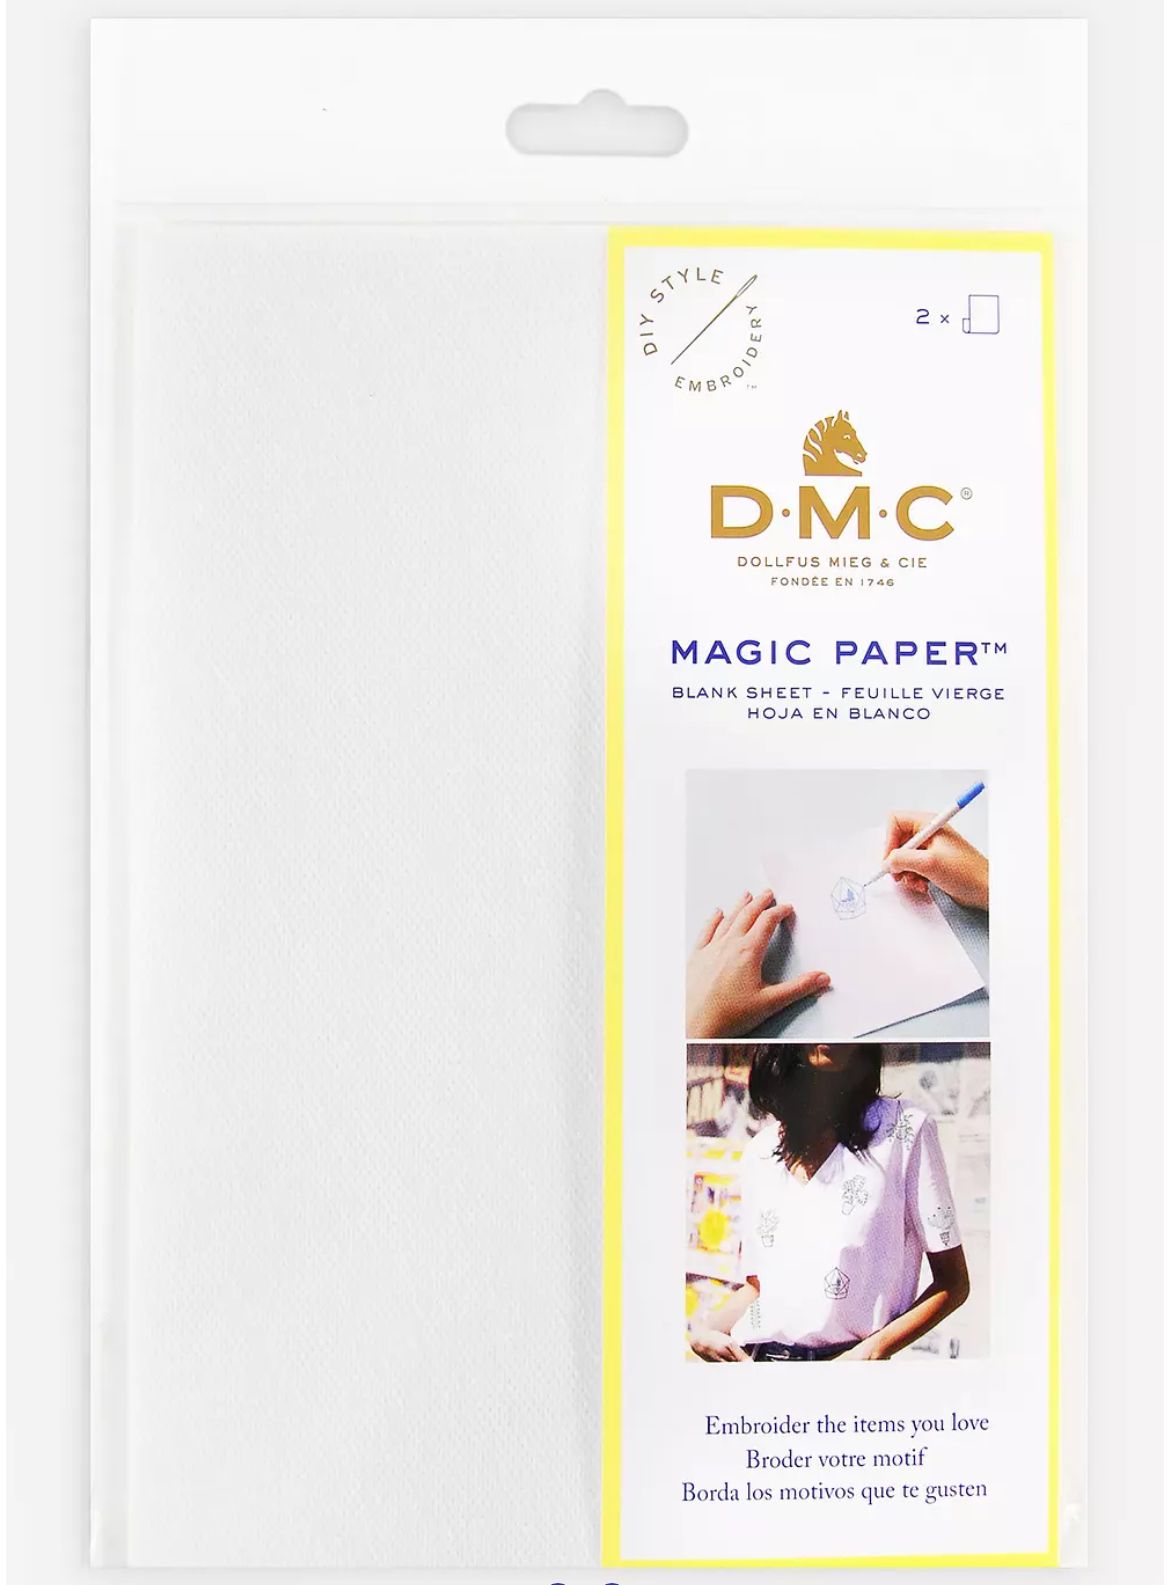 D.M.C - pack de 2 feuilles vierges A5 feuille magique - magic paper